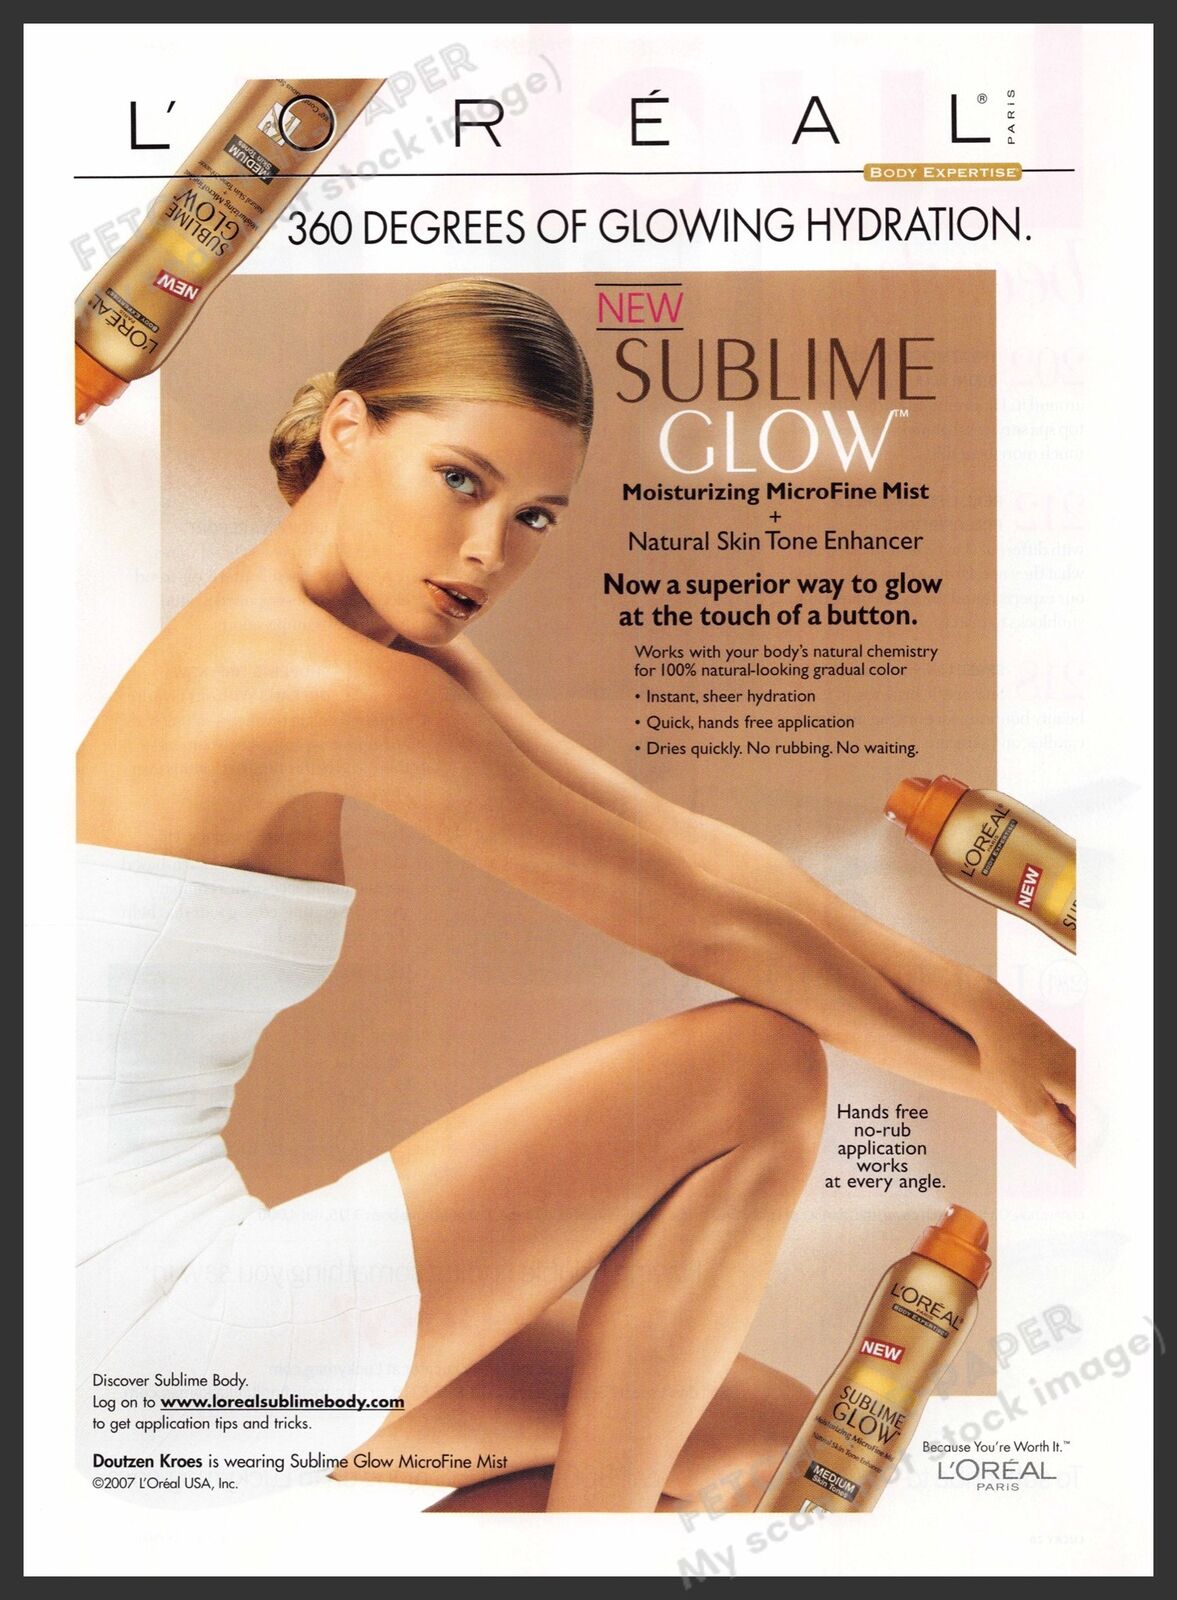 L'Oreal Sublime Glow Doutzen Kroes 2000s Print Advertisement 2007 Legs Arms Tan